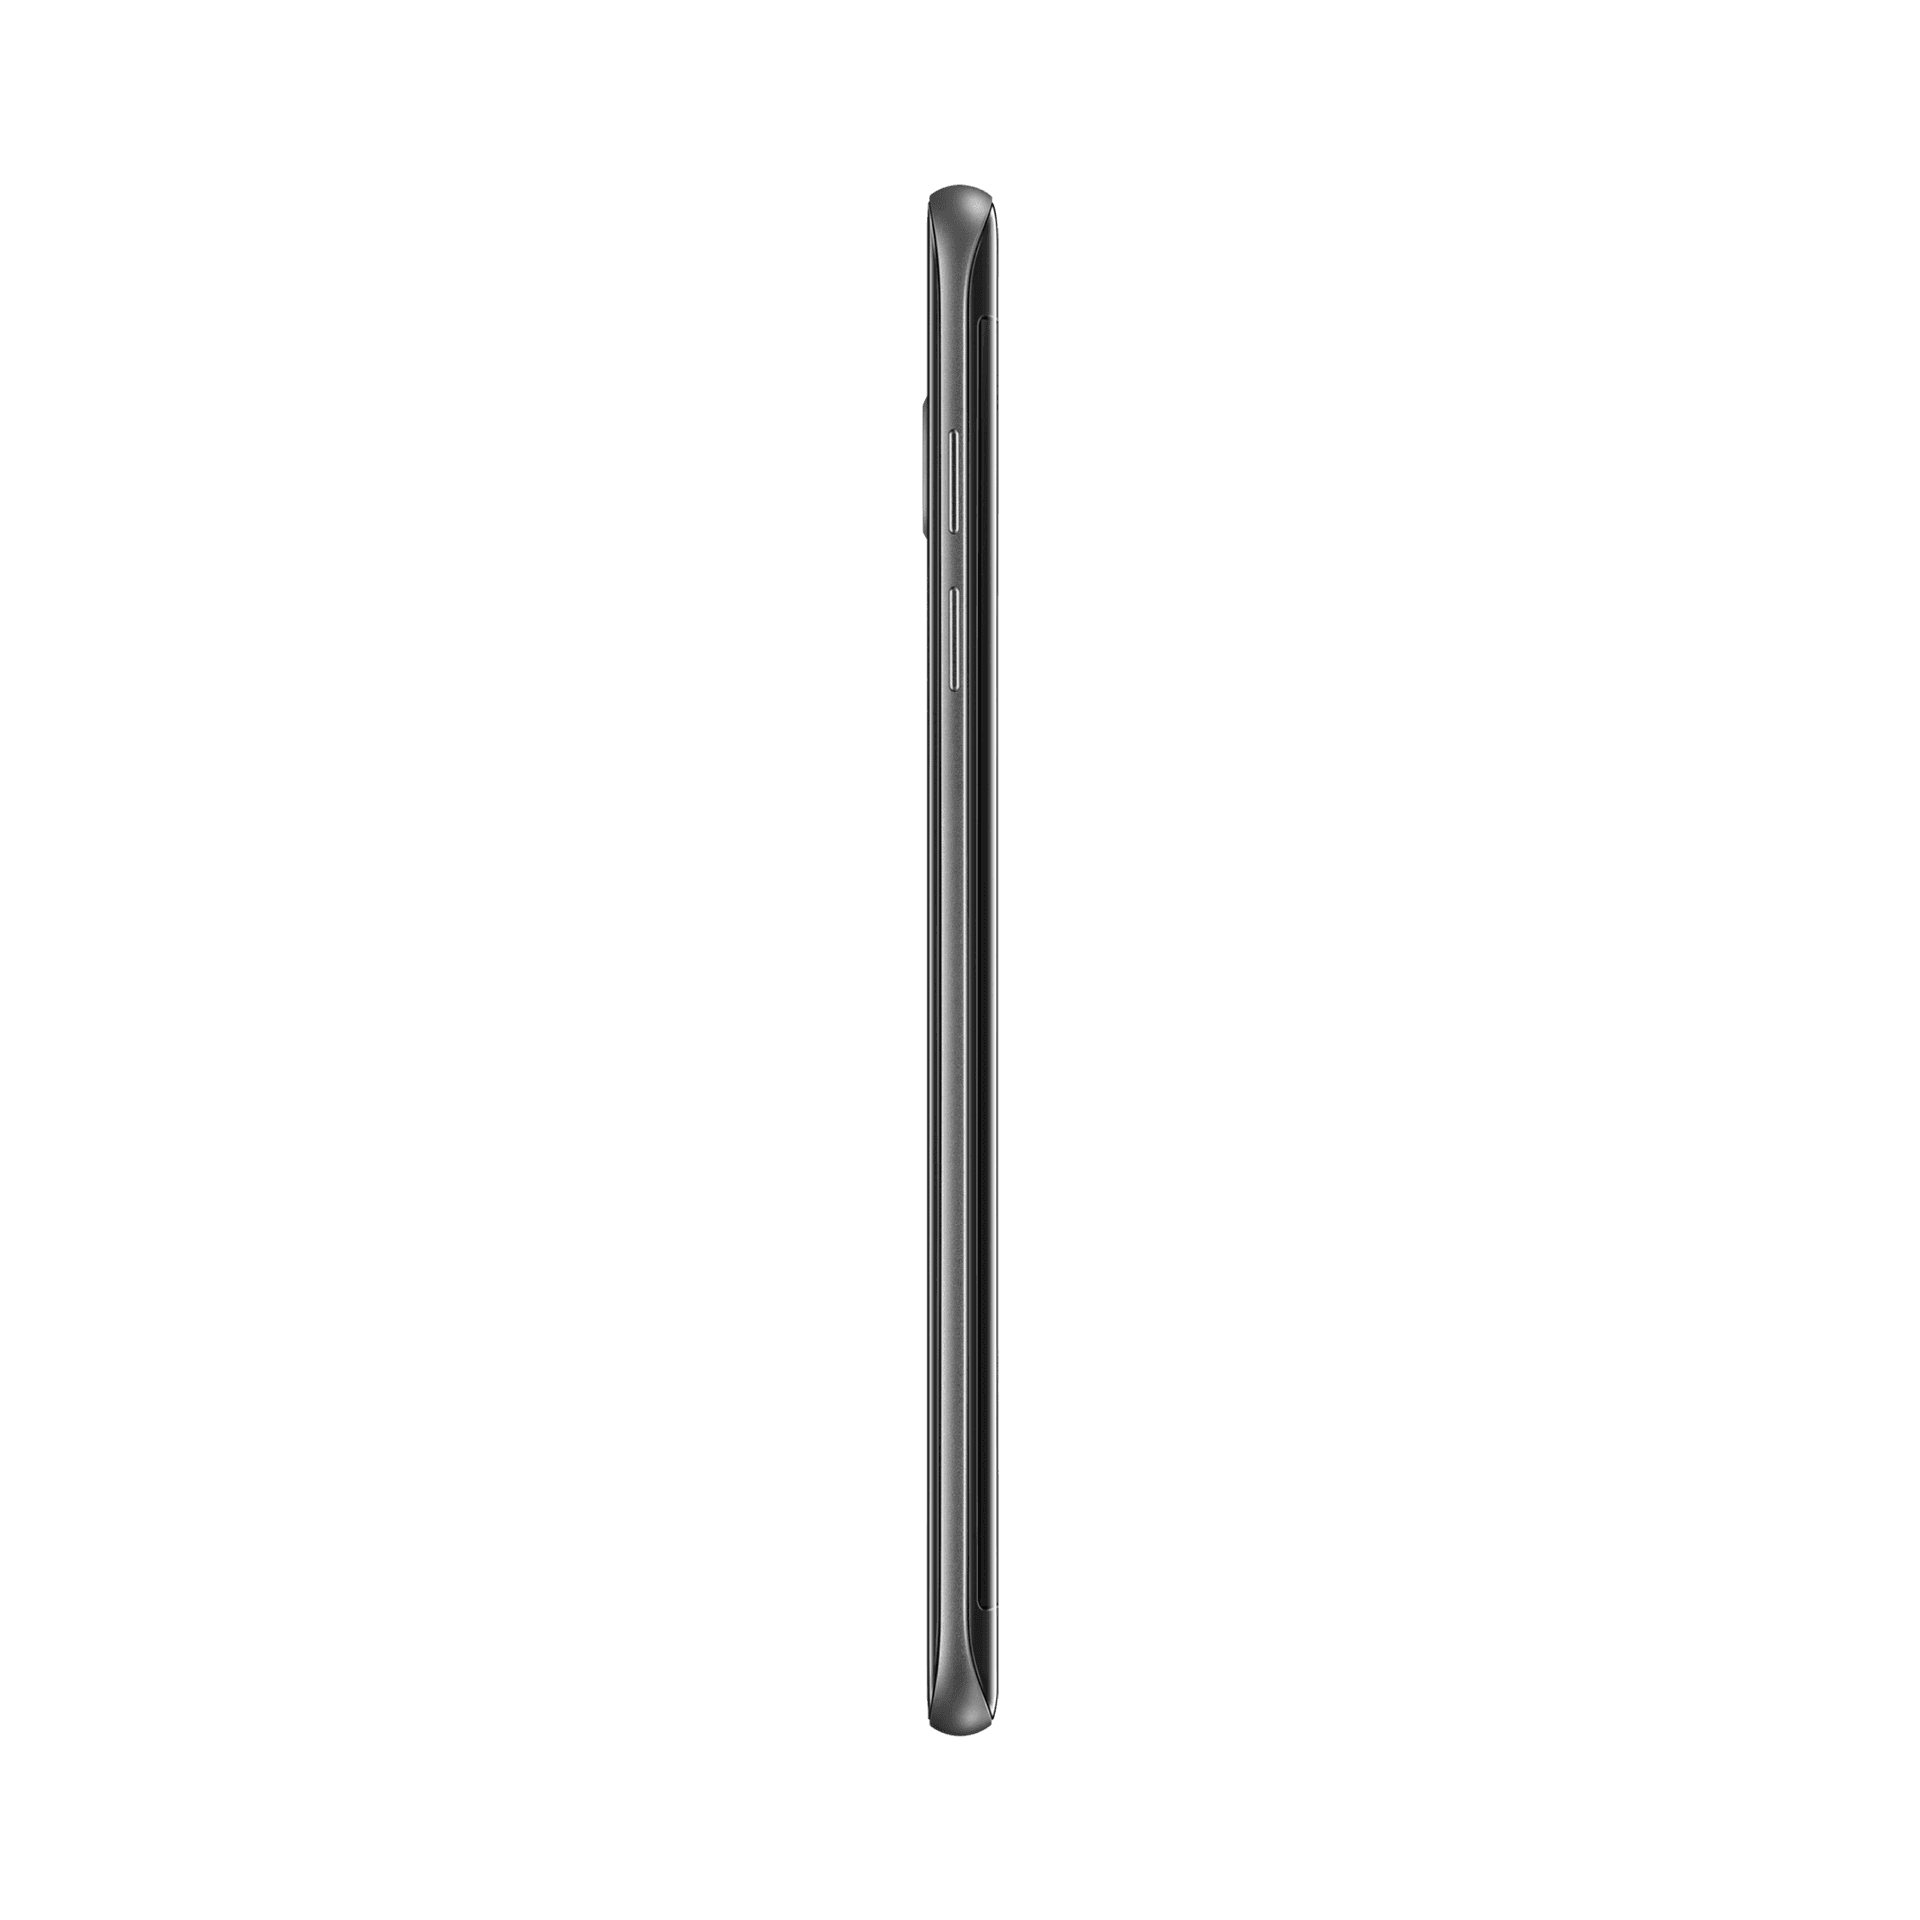 Samsung Galaxy S7 Edge - 32 GB - Siyah